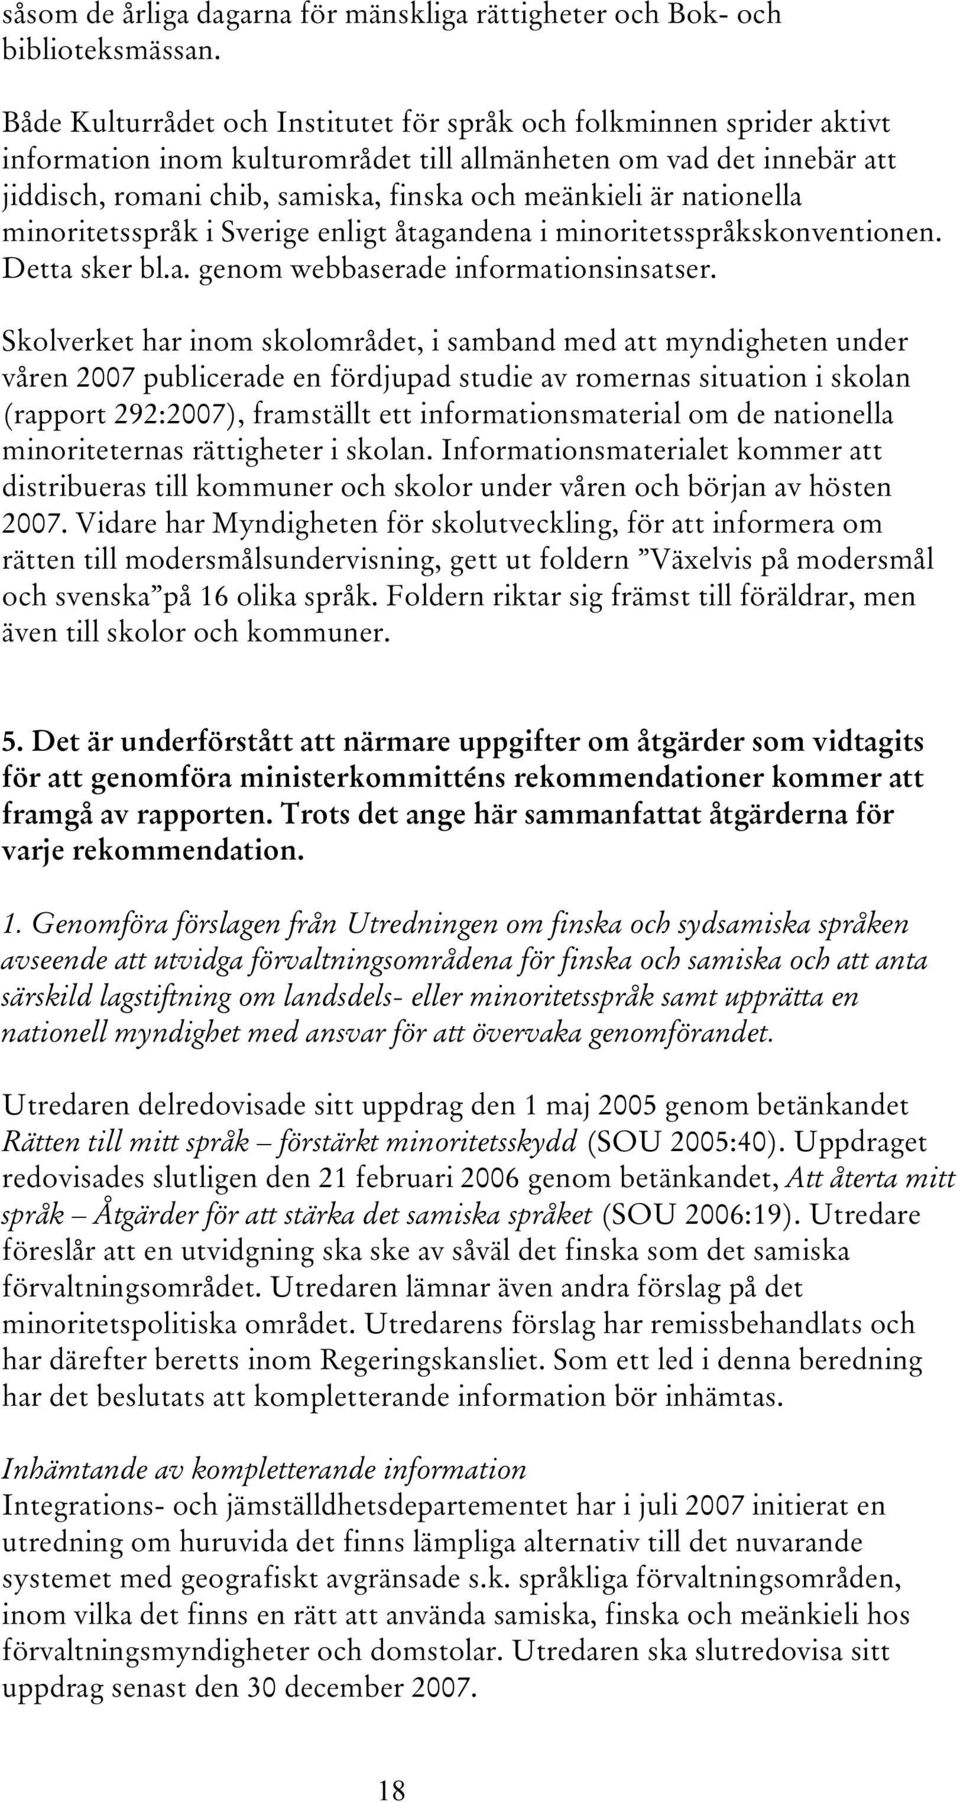 nationella minoritetsspråk i Sverige enligt åtagandena i minoritetsspråkskonventionen. Detta sker bl.a. genom webbaserade informationsinsatser.